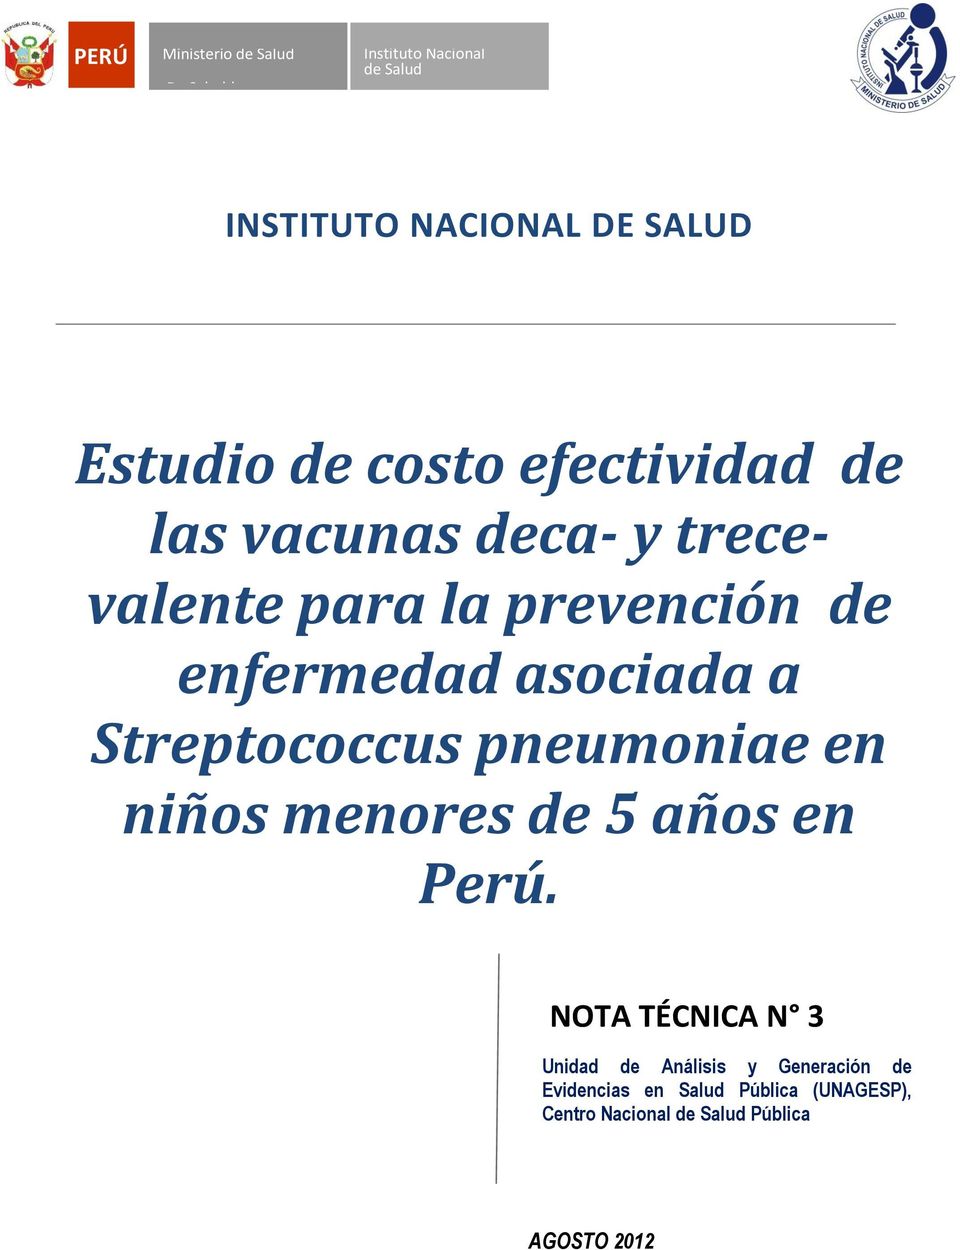 a Streptococcus pneumoniae en niños menores de 5 años en Perú.